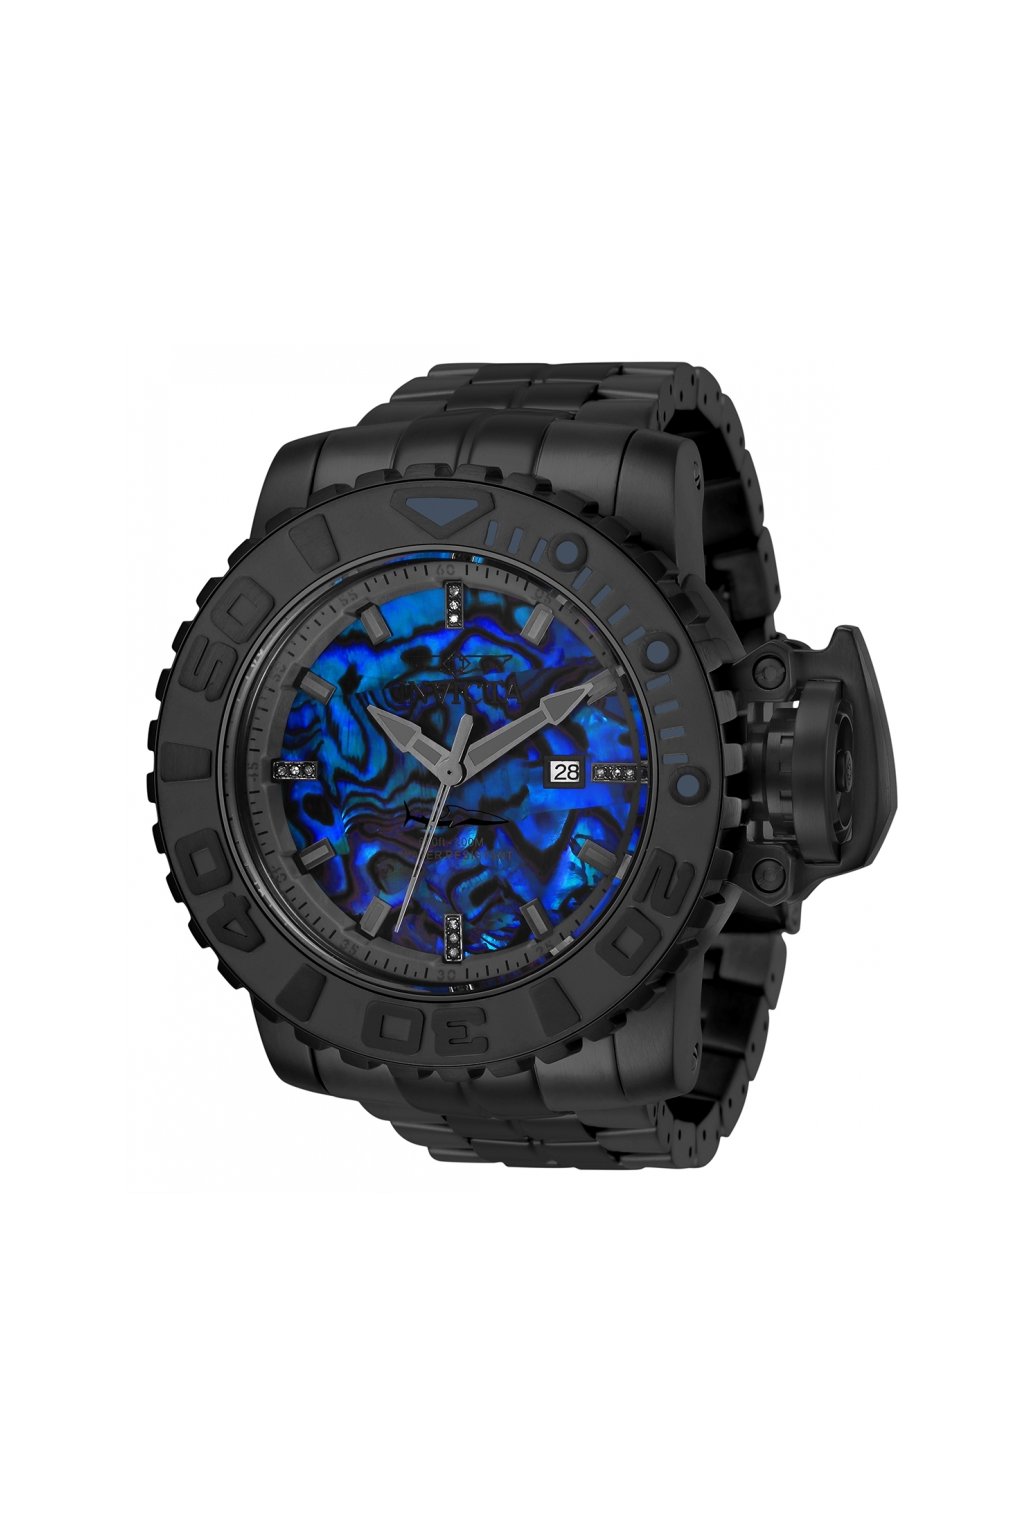 Pánské hodinky Invicta Sea Hunter 28988  + Kufr Invicta v hodnotě 1000 Kč ZDARMA